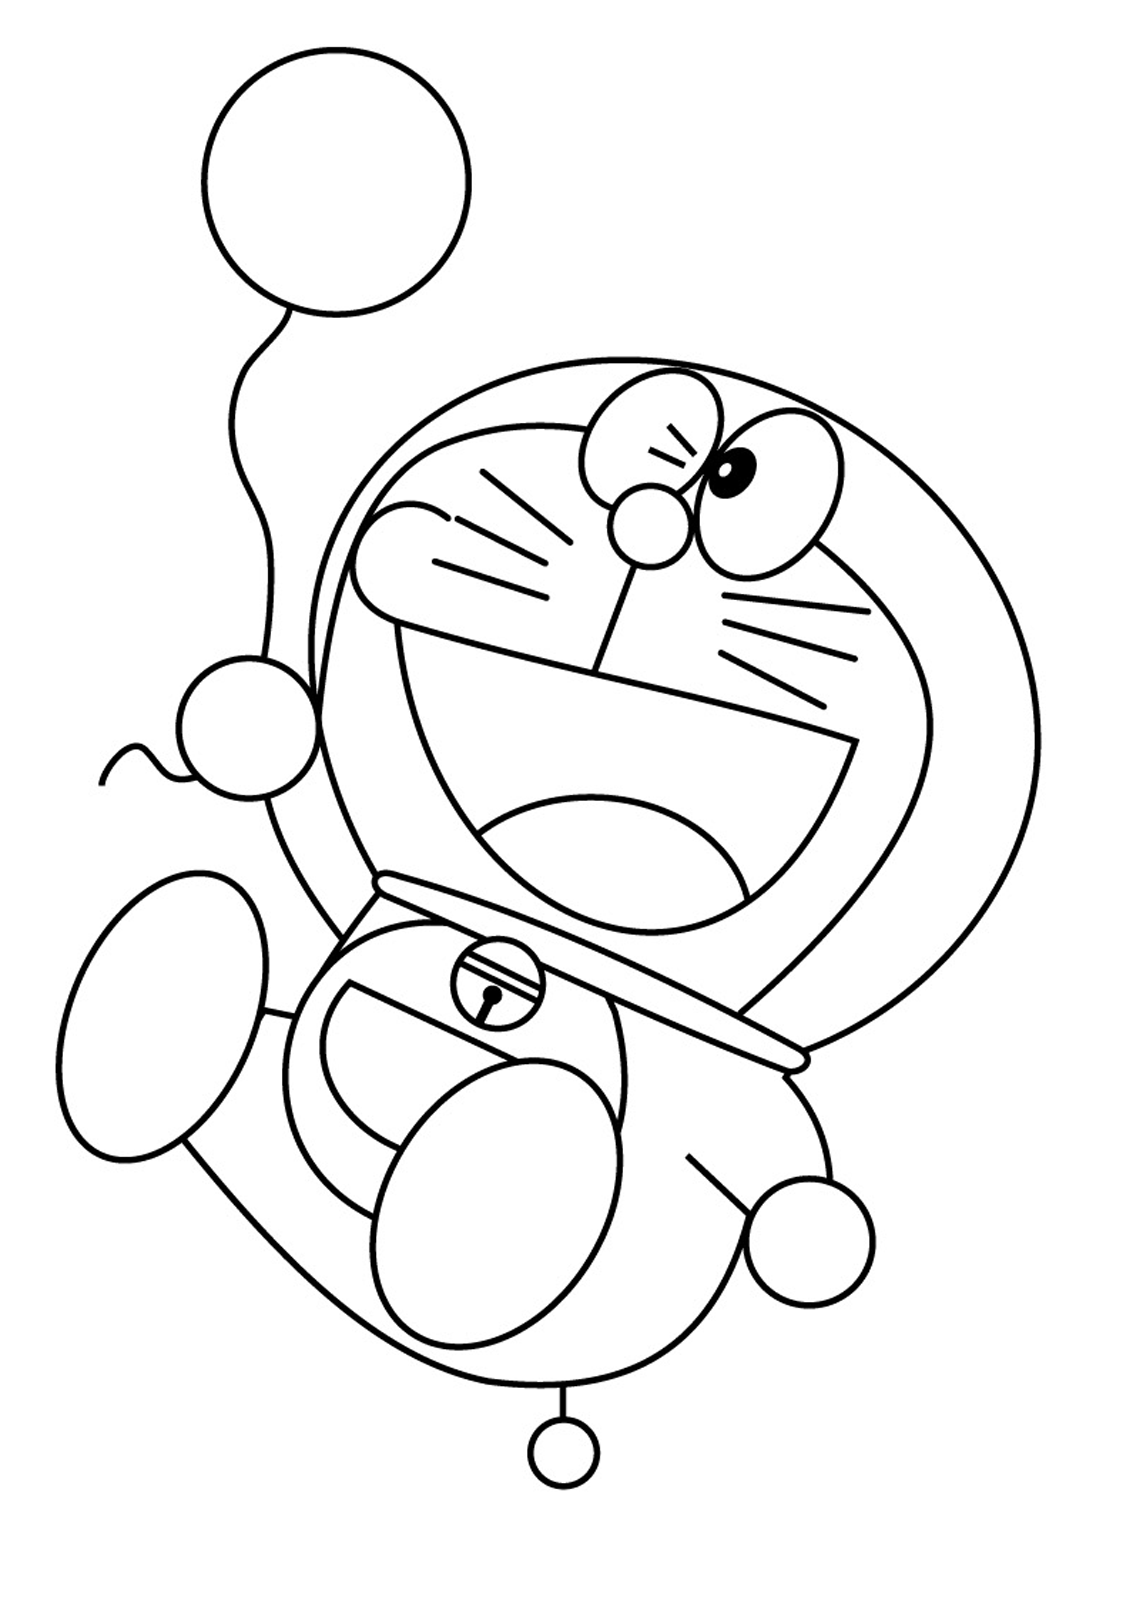 Doraemon - Doraemon plays with a balloon